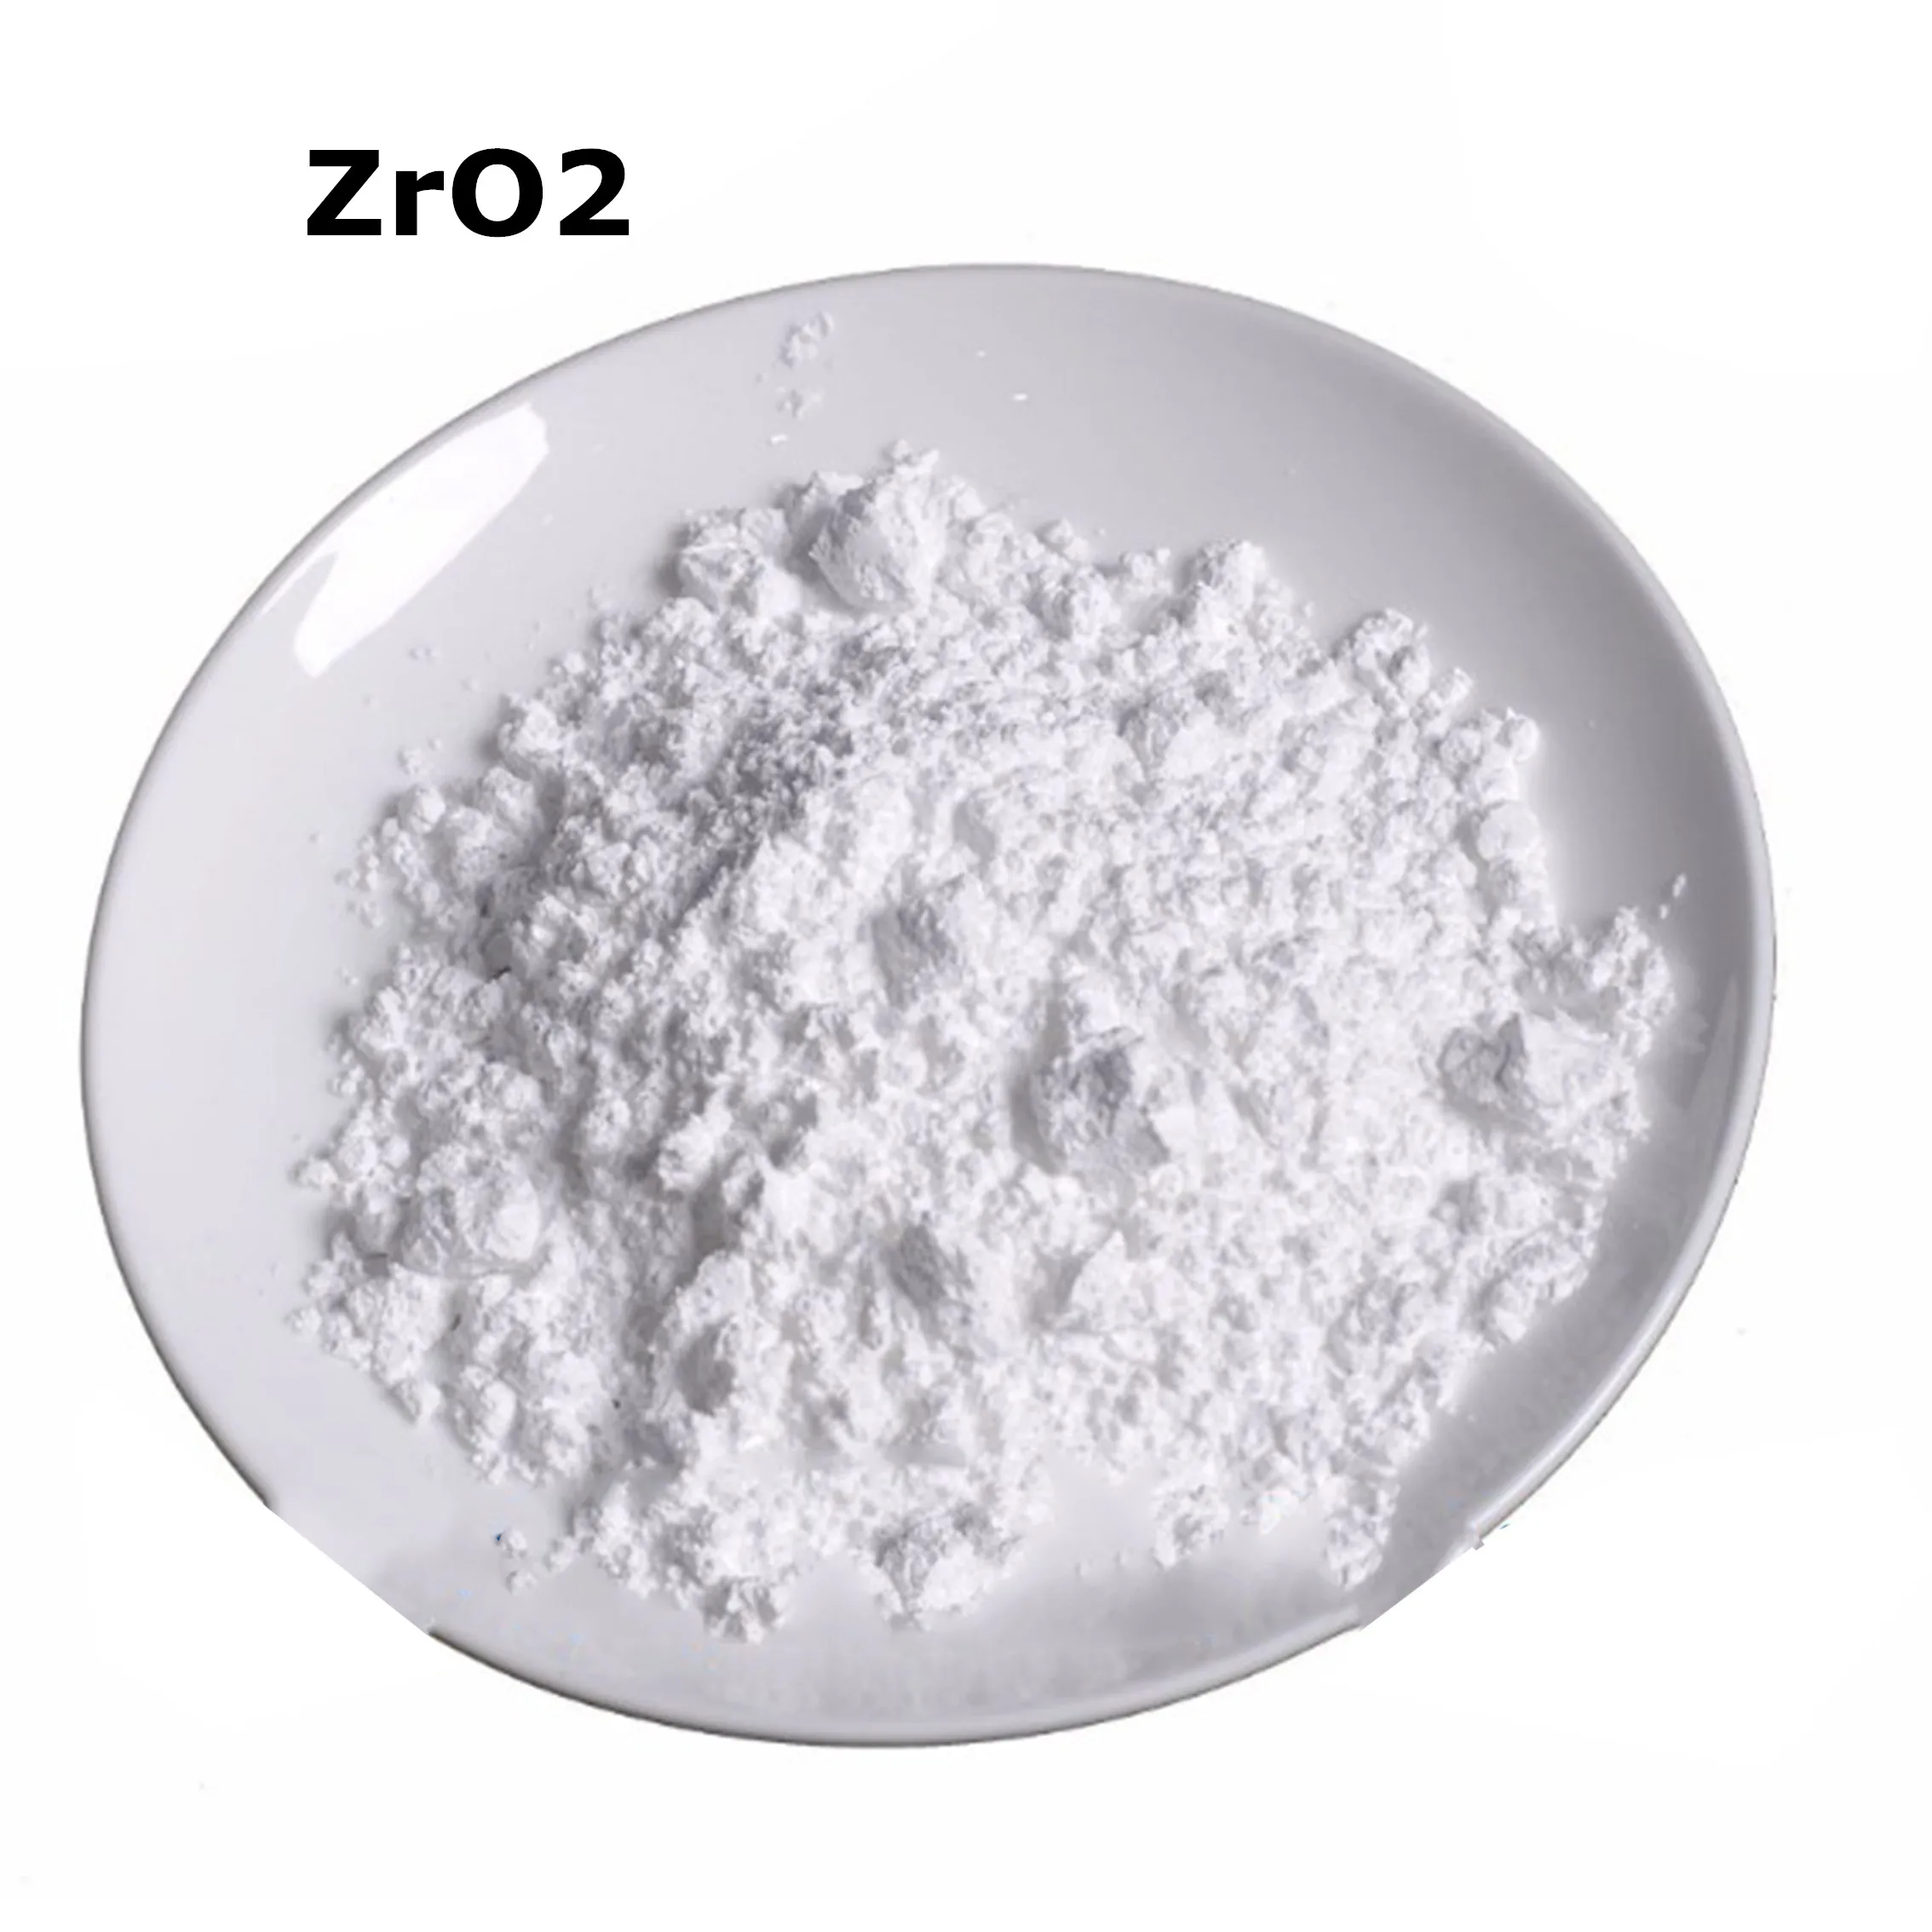 

Чистый порошок ZrO2, 99.9% оксид циркония для НИОКР, ультратонкие нано-порошки, около 1 микрометра